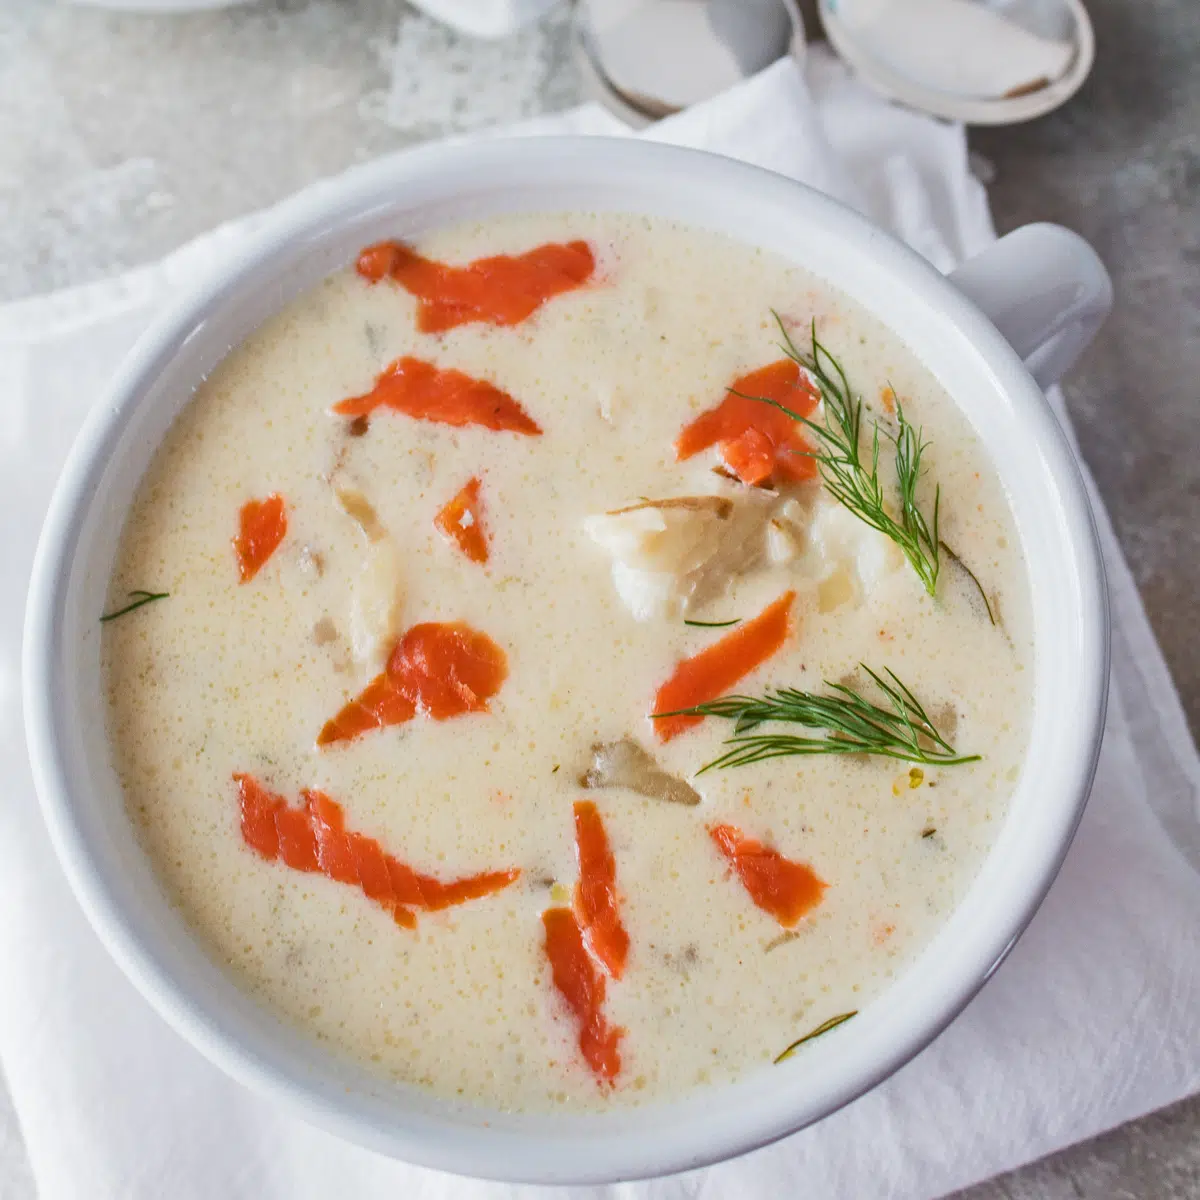 Sovraccarico quadrato di zuppa di pesce con salmone affumicato in una ciotola bianca.